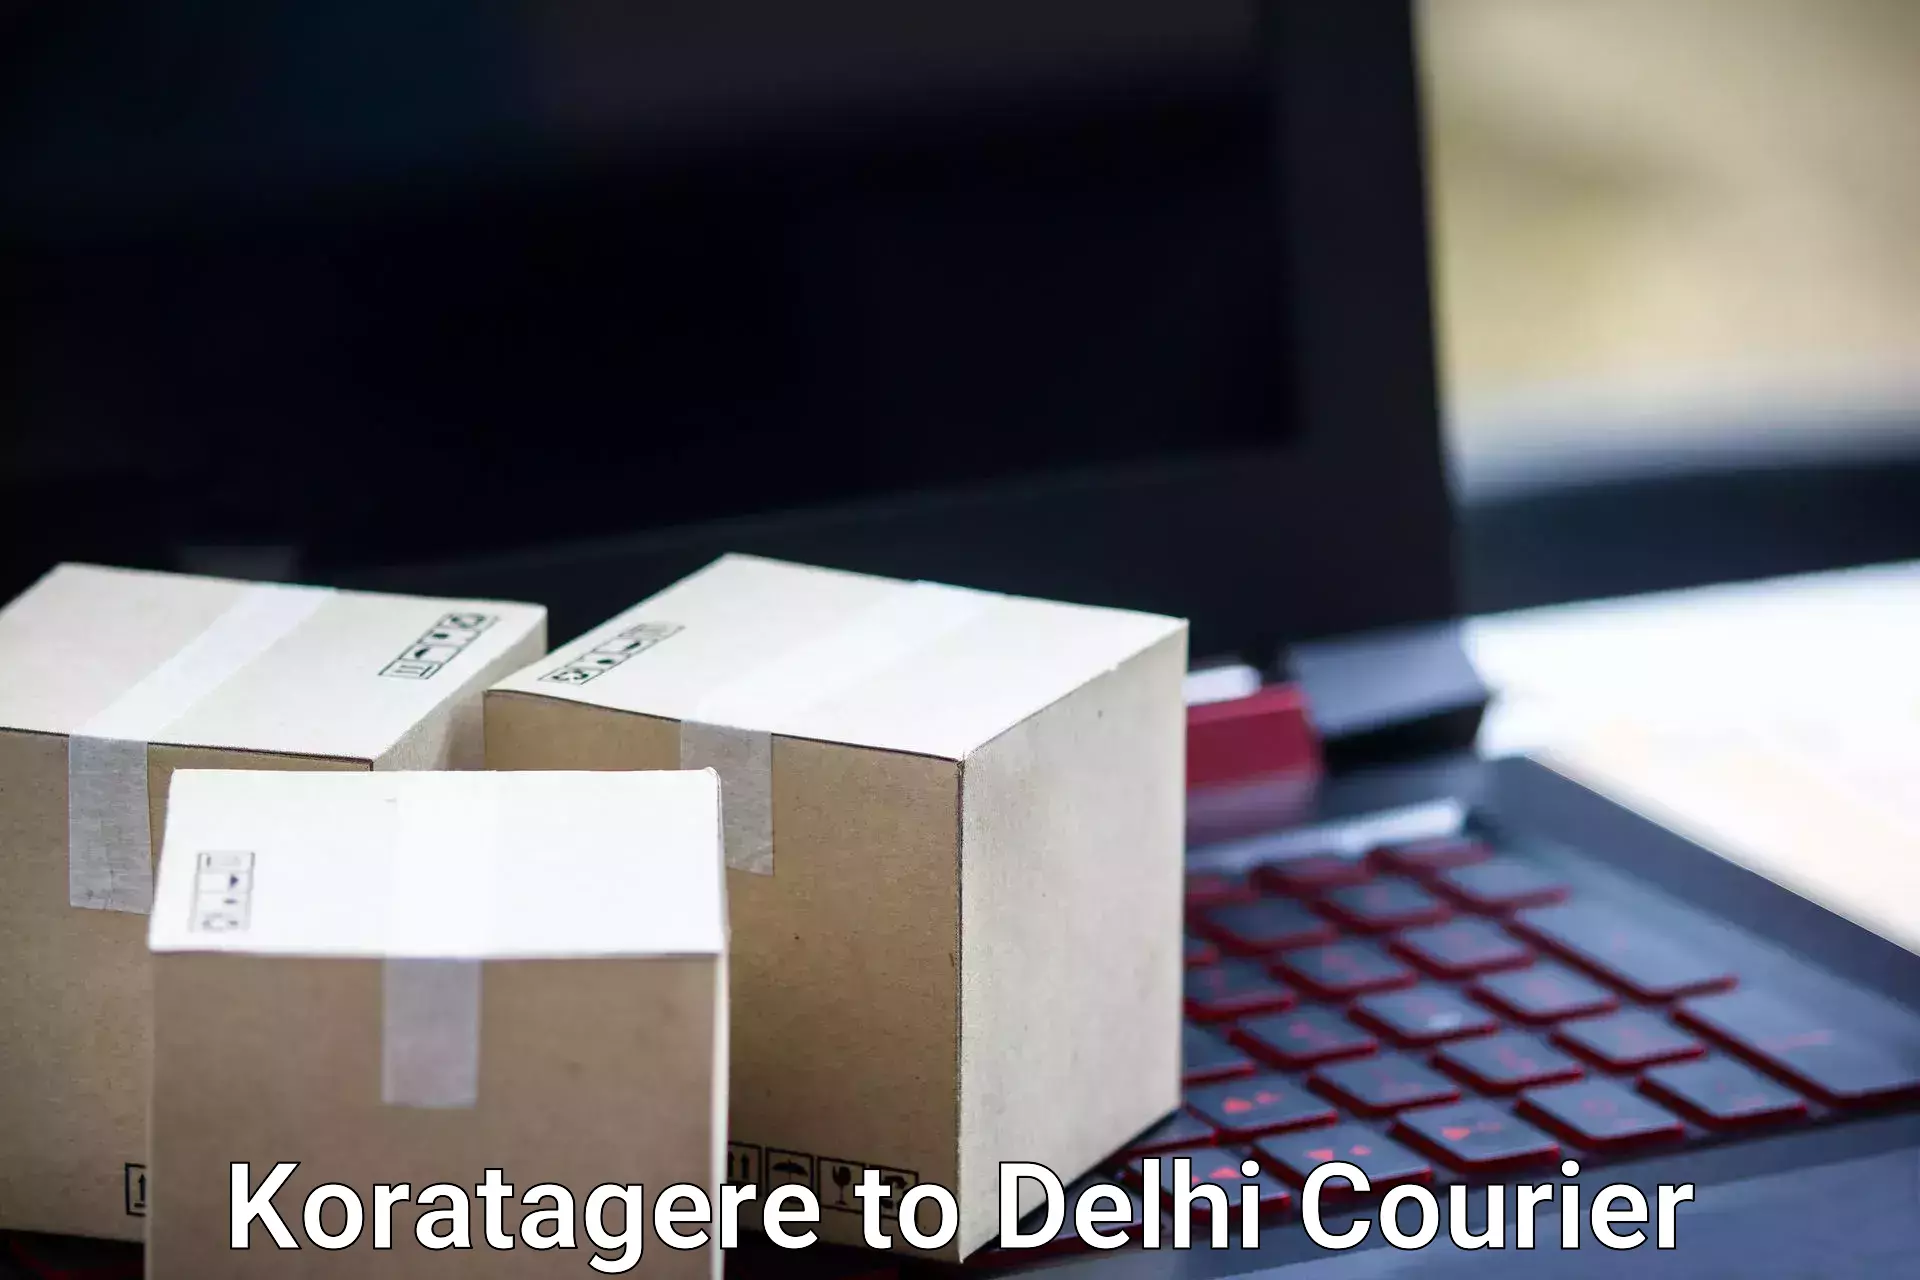 Luggage shipping service Koratagere to University of Delhi